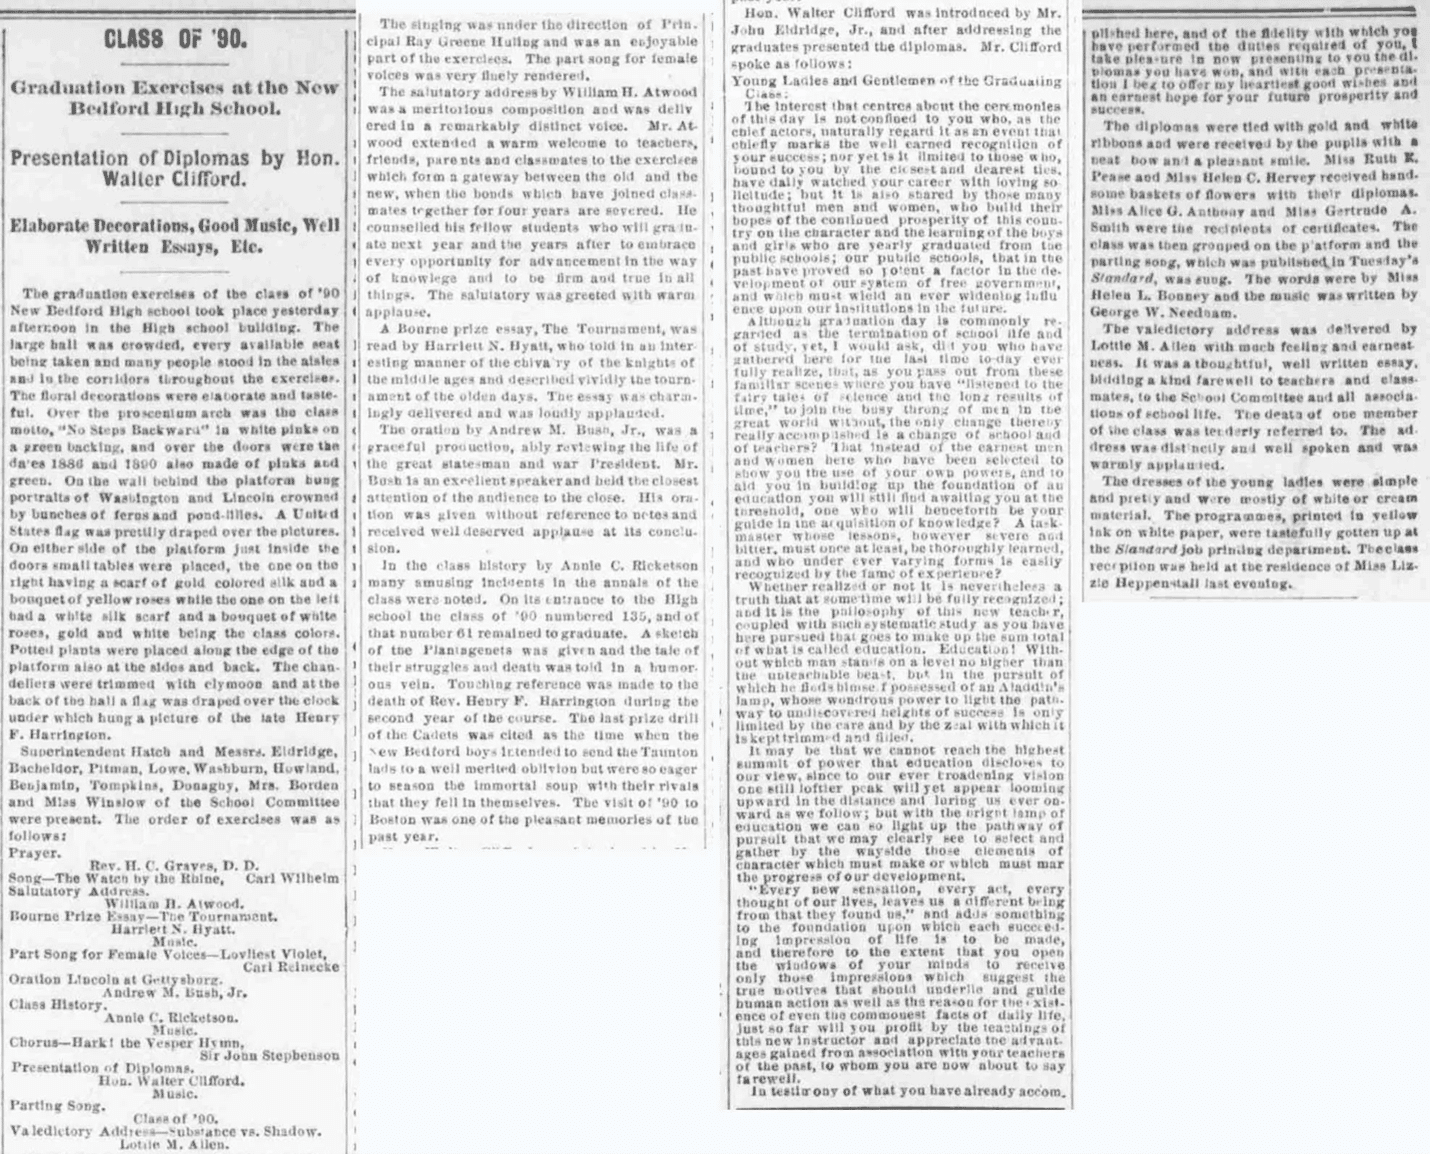 Class of ‘90”, artigo de jornal, The Evening Standard (New Bedford, Massachusetts), 28 de junho de 1890, p. 2, col. 6.